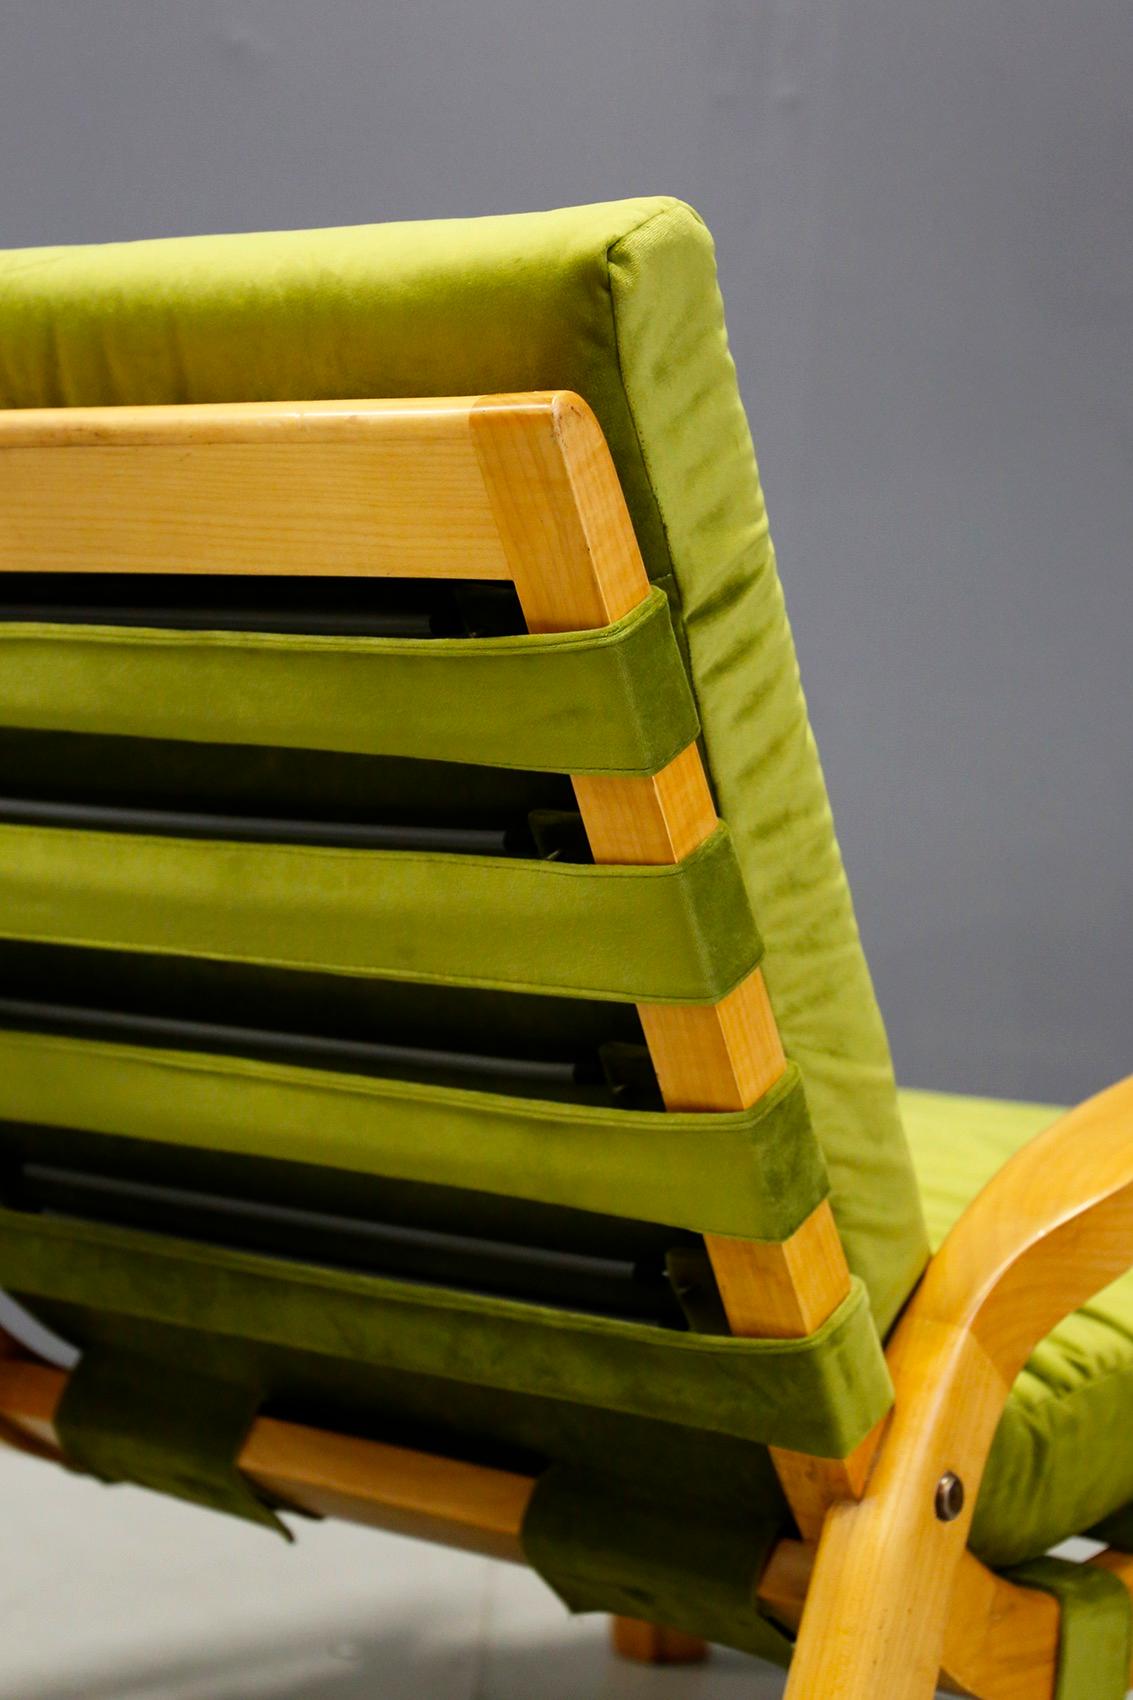 Élégante paire de fauteuils réalisée par Gustavo Pulitzer et Giorgio Lach en 1935. Les fauteuils sont fabriqués en bois de cerisier robuste en forme de vague. La structure qui supporte le poids de l'invité est le tissu fait de lattes en bandes de